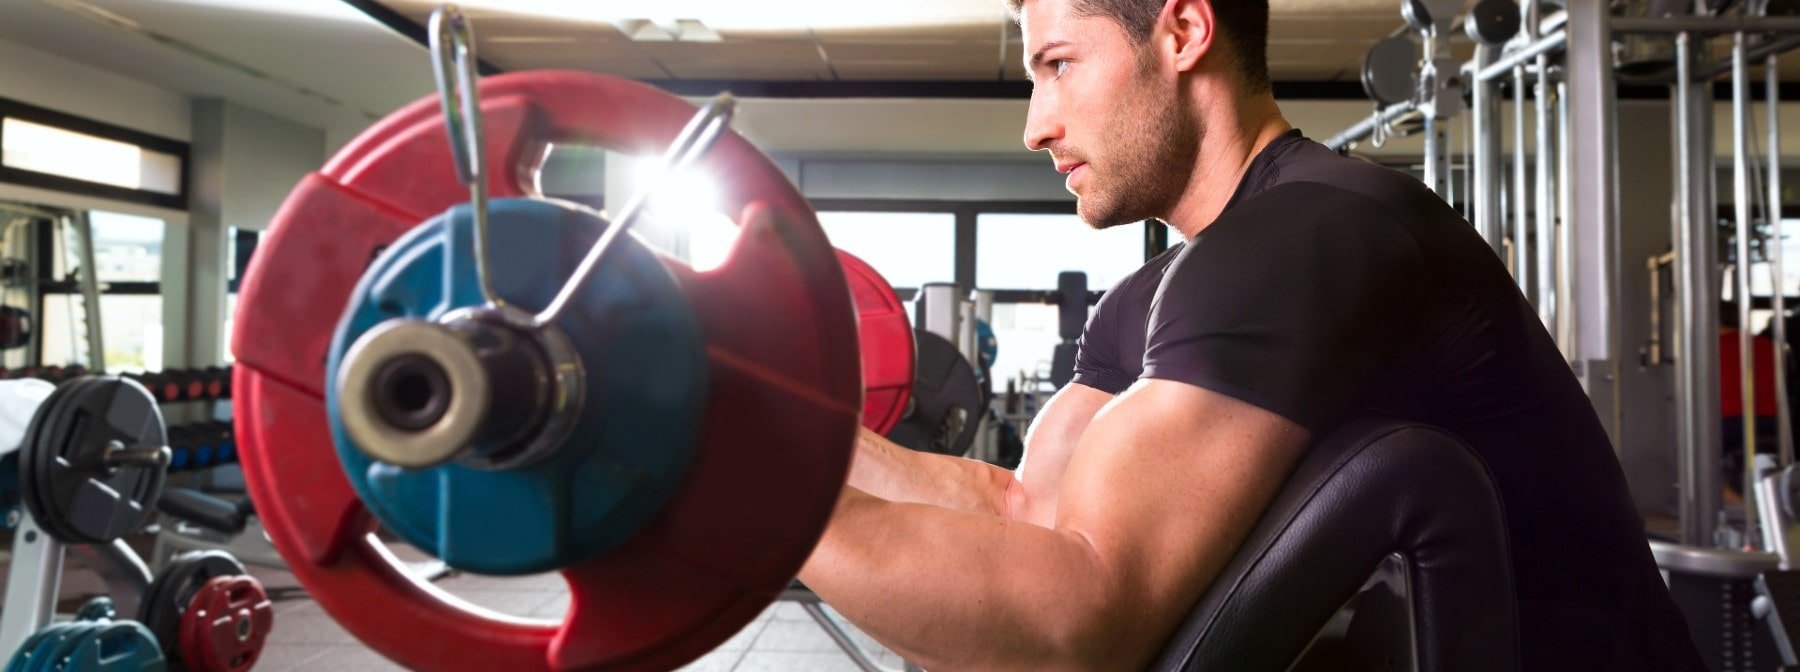 Koncentrált bicepsz gyakorlat | Így végezzük helyesen